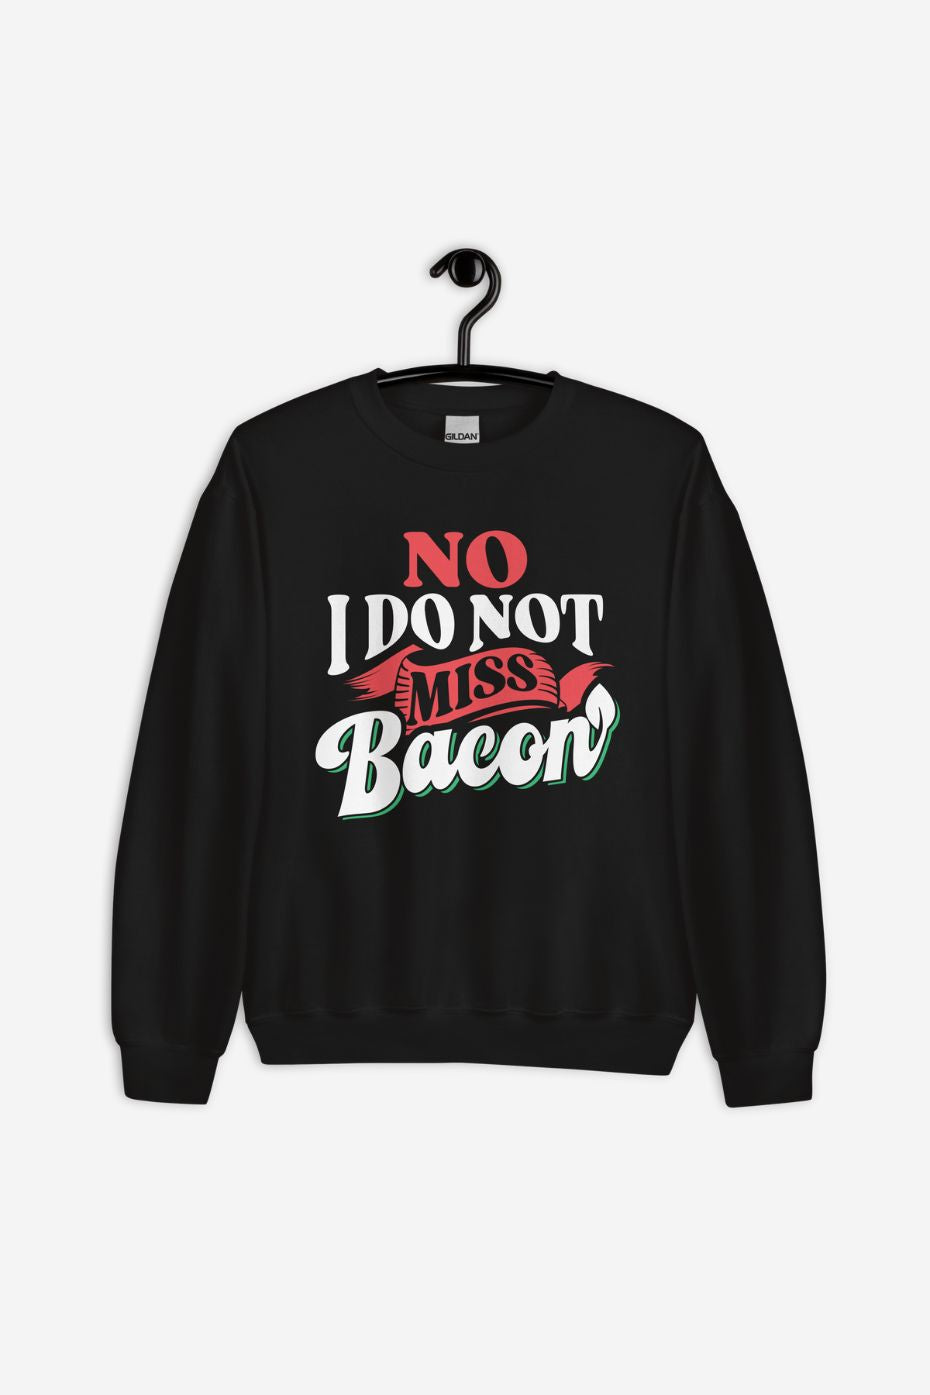 I Do Not Miss Bacon - Unisex Sweatshirt